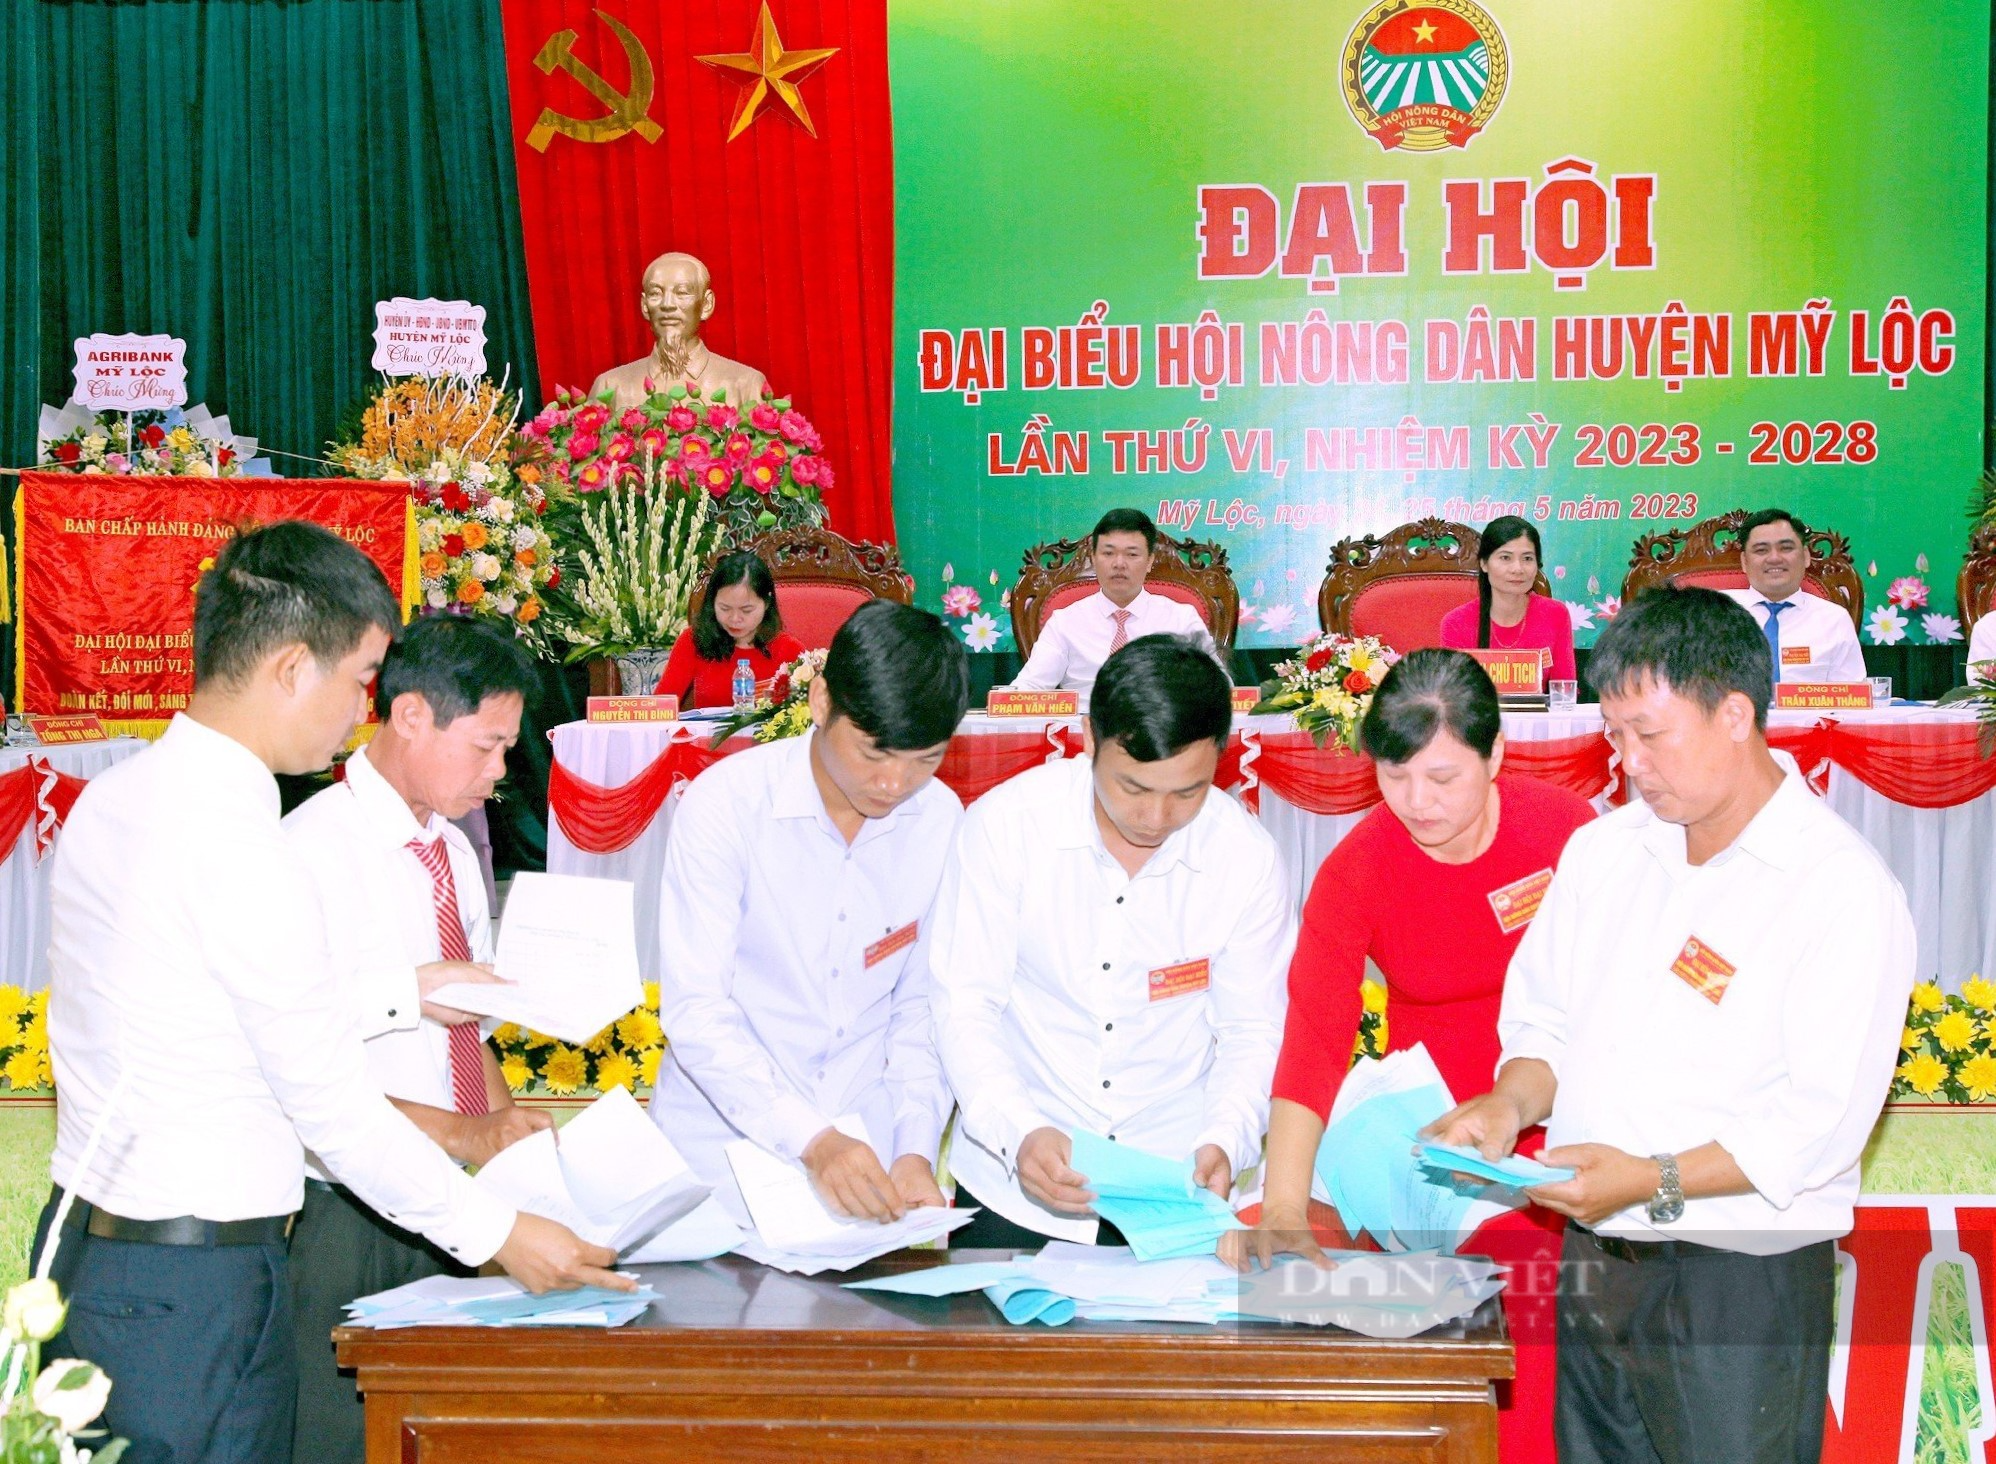 Đại hội Hội Nông dân cấp cơ sở ở tỉnh Nam Định diễn ra theo đúng kế hoạch - Ảnh 4.